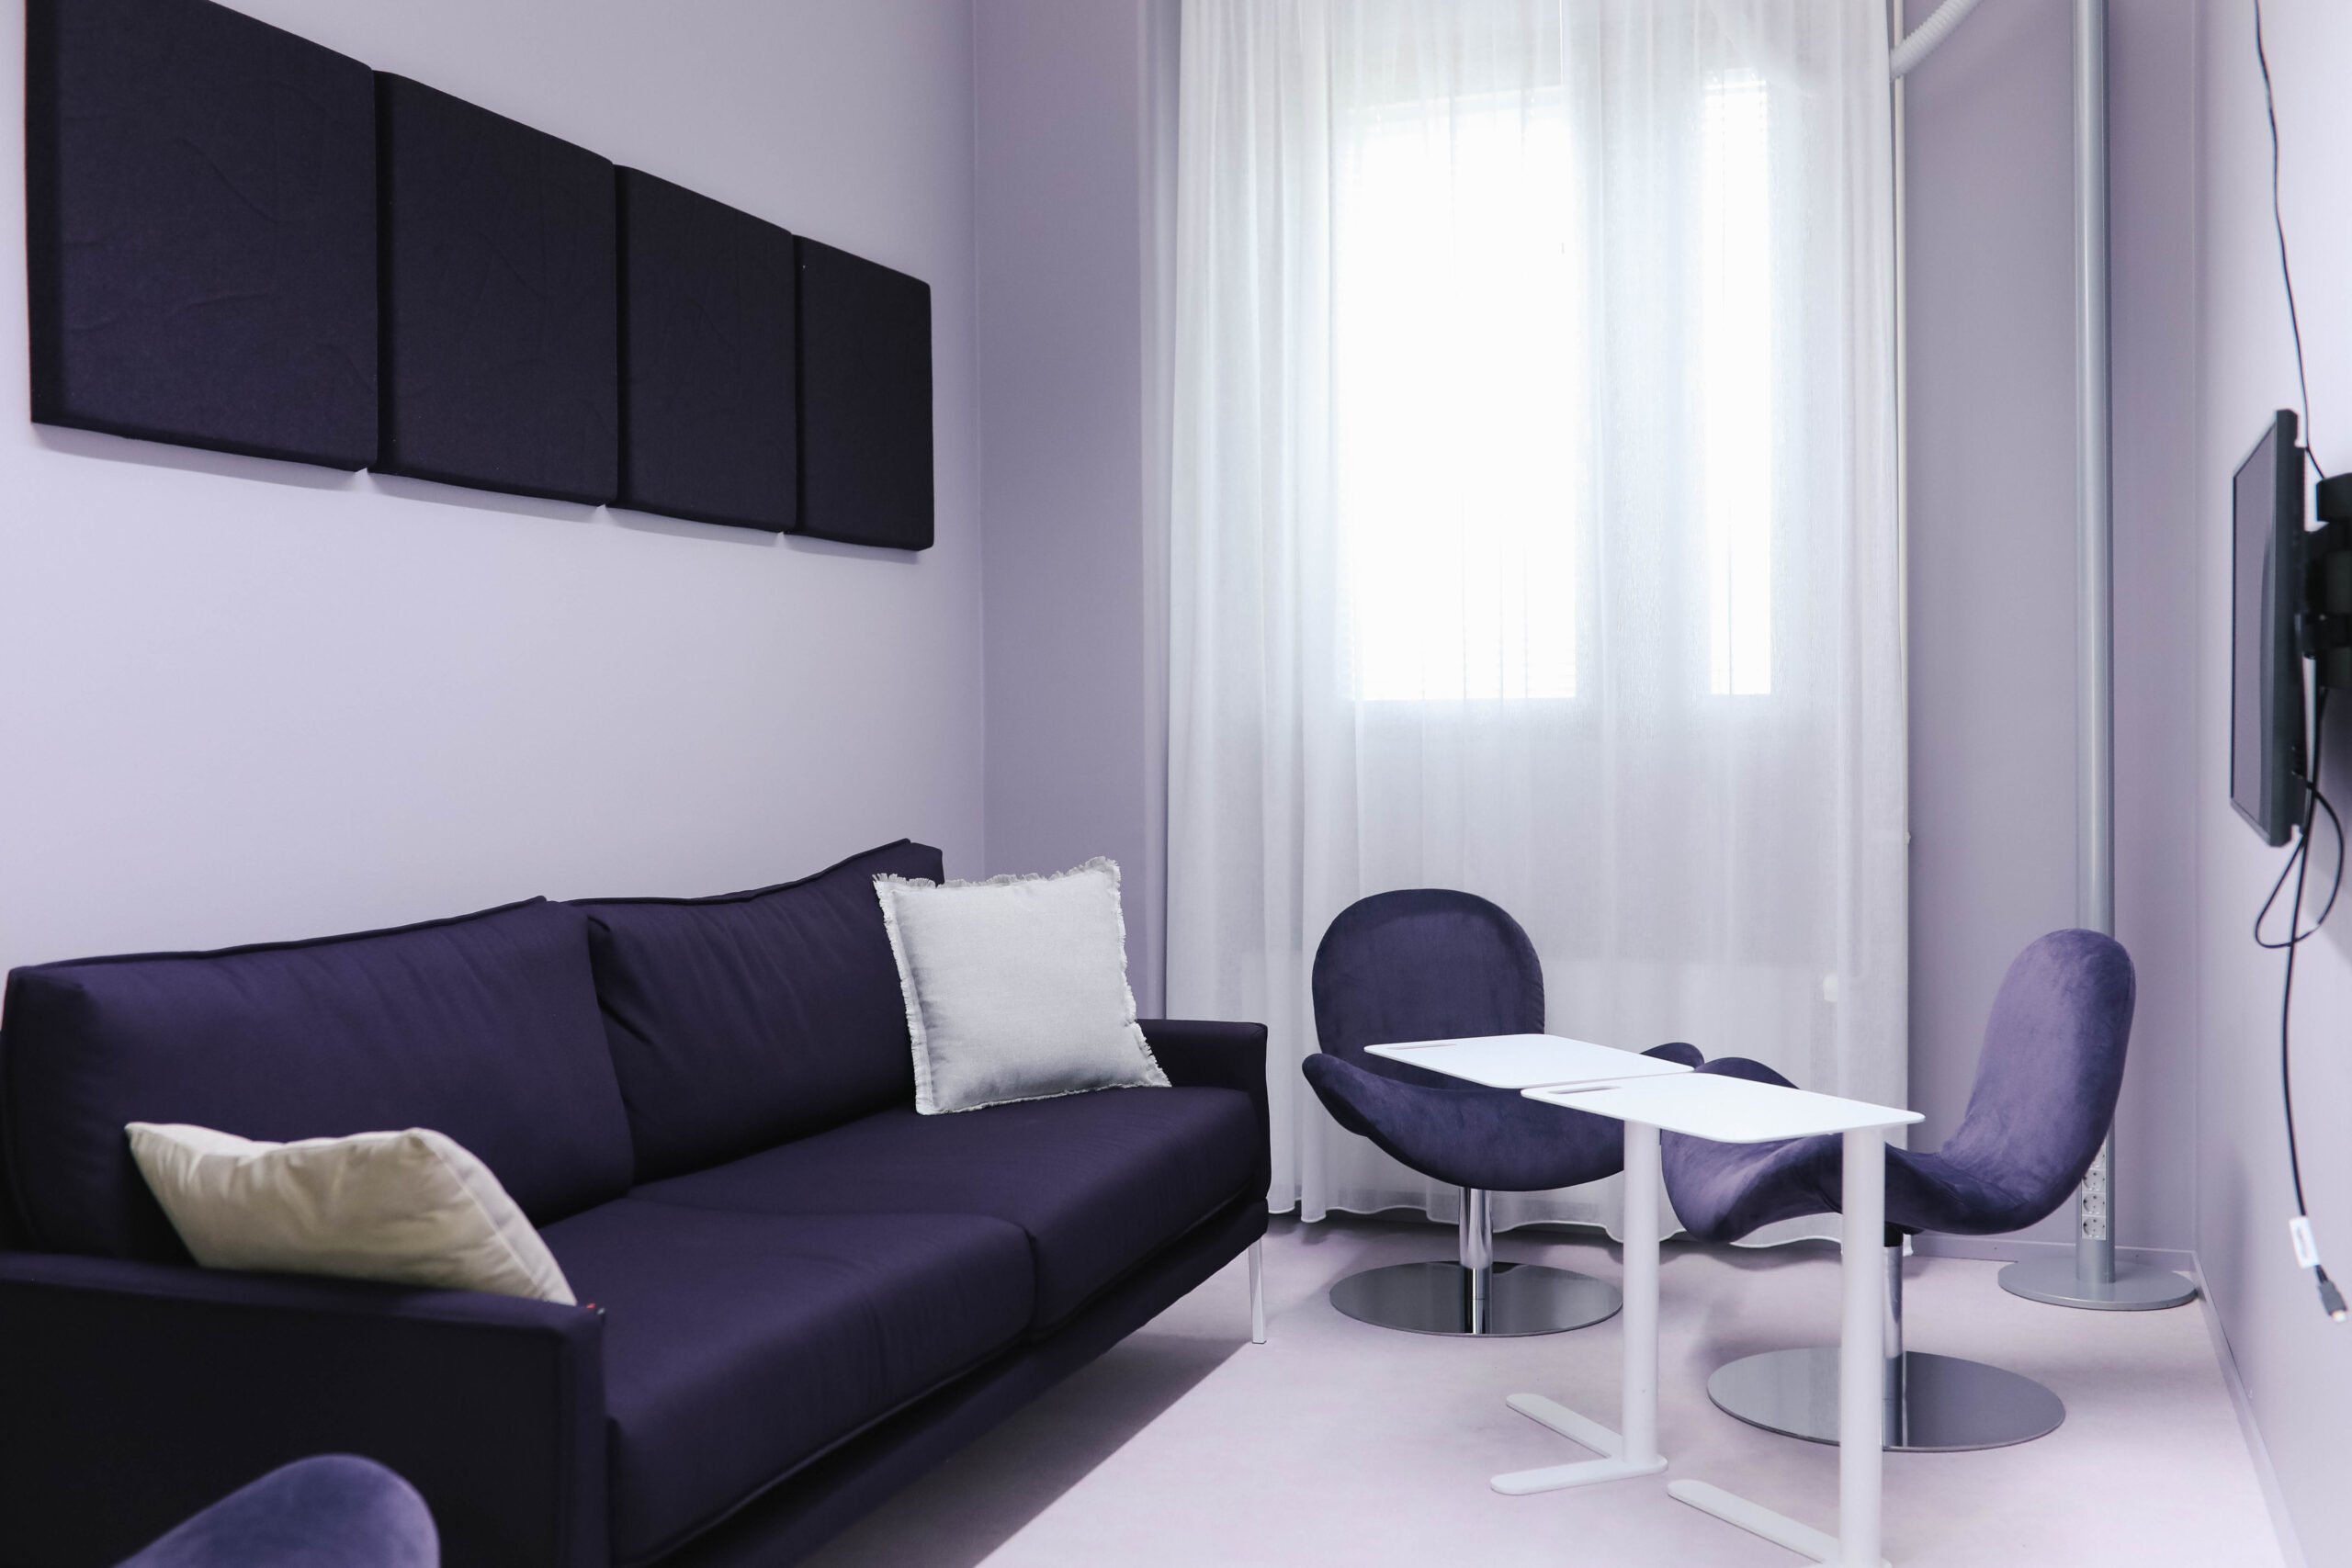 Tässä kuvassa on Meitan Lappeenrannan toimiston työskentelytila, jossa on sohva, tuoleja, pöytä, näyttö sekä äänieristelevyt seinällä